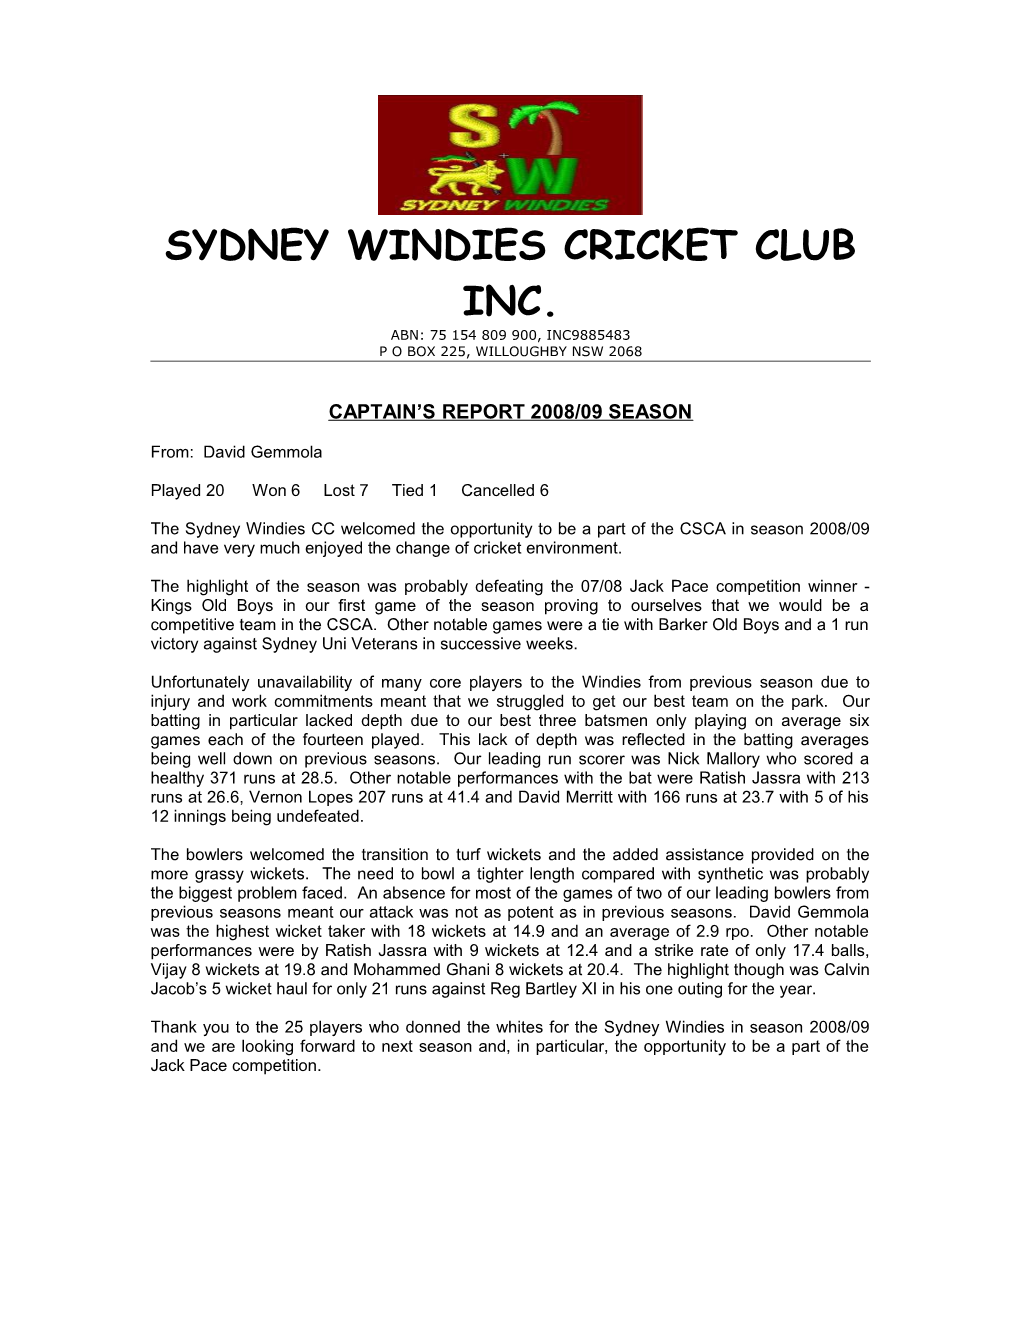 Sydney Windies Cricket Club